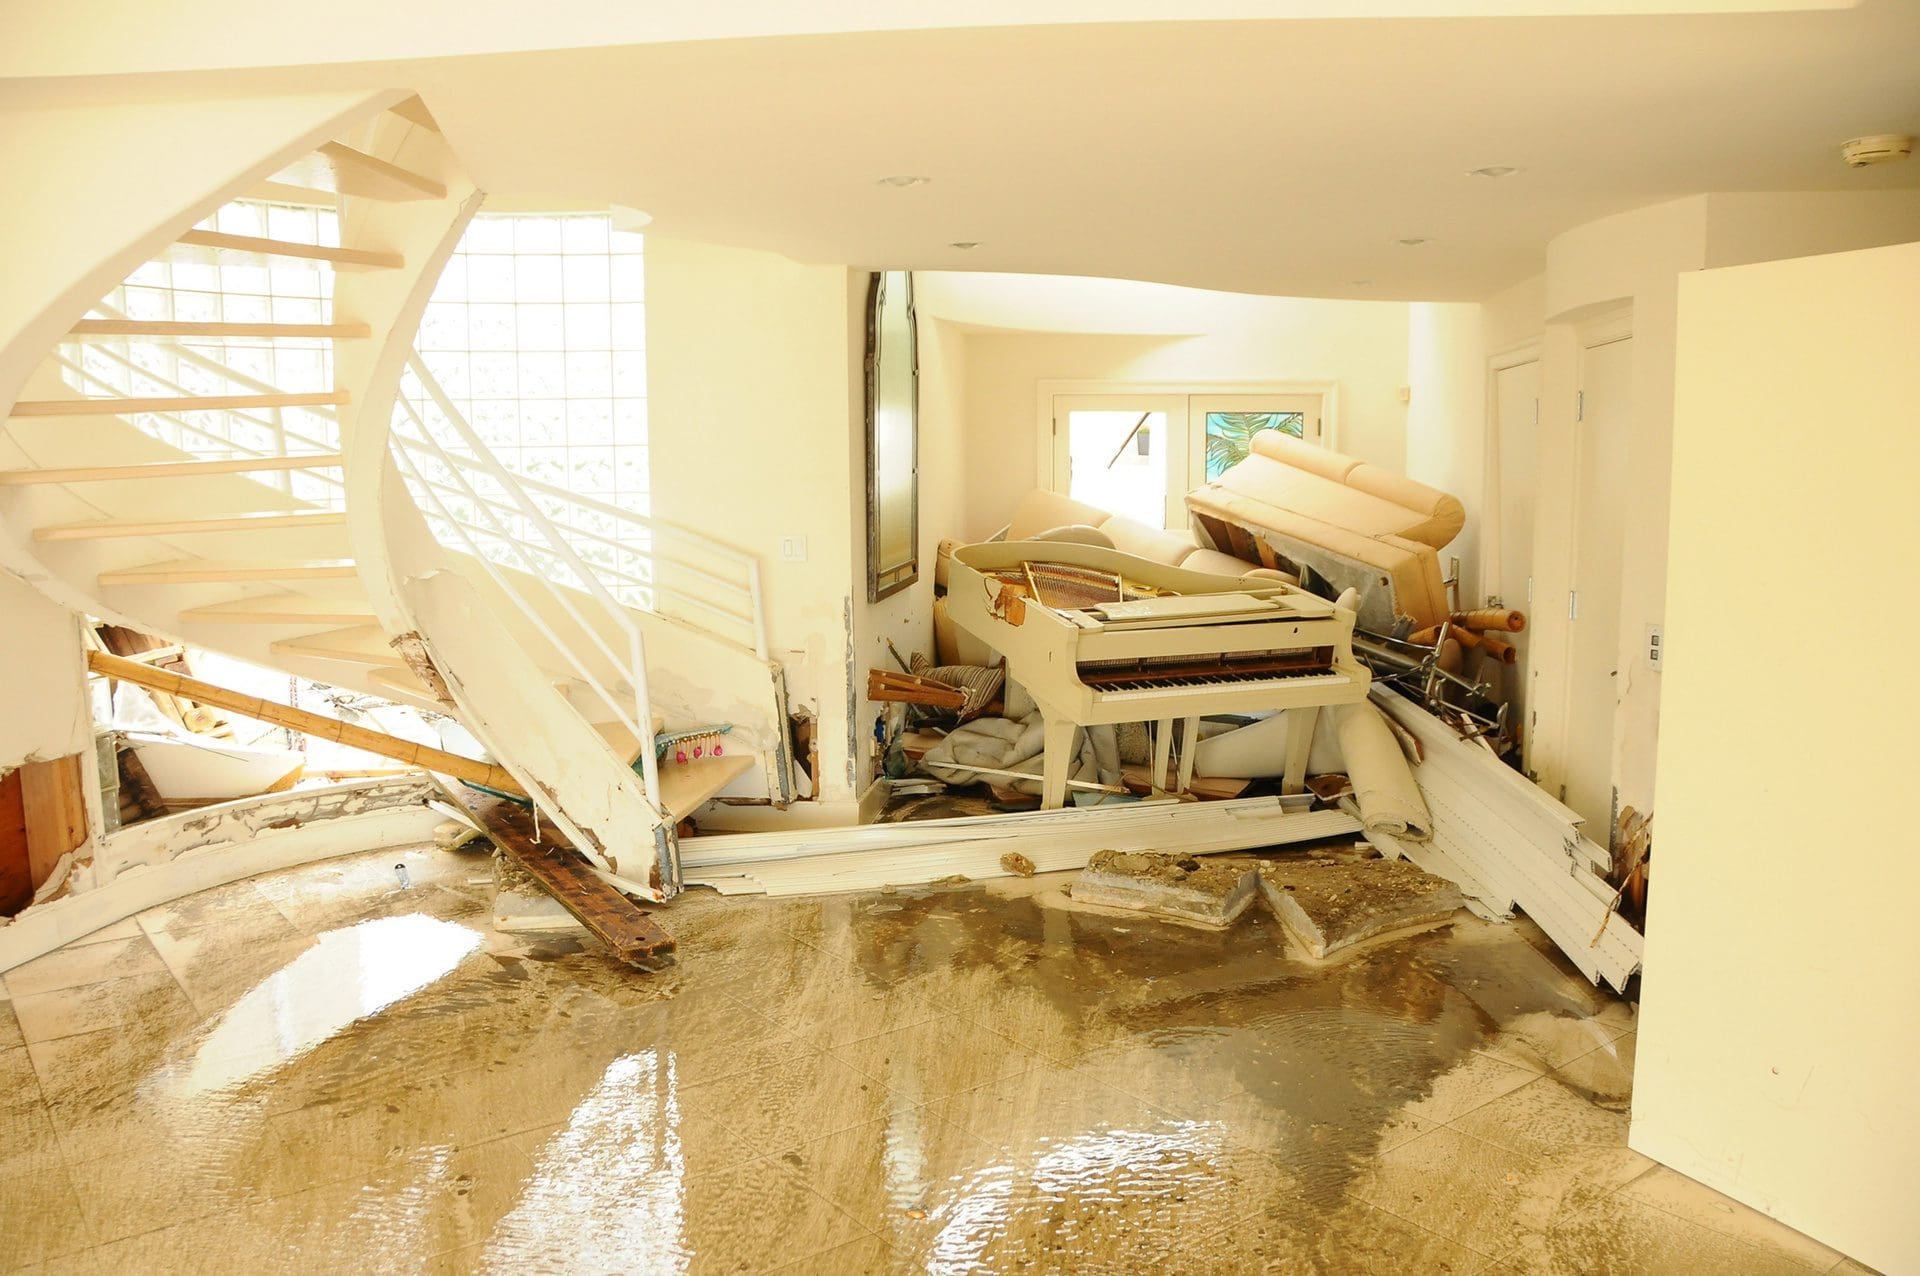 Überschwemmungsschaden | Was zahlt die Hausratversicherung, was die Gebäudeversicherung? (© Charles Eberson / stock.adobe.com)